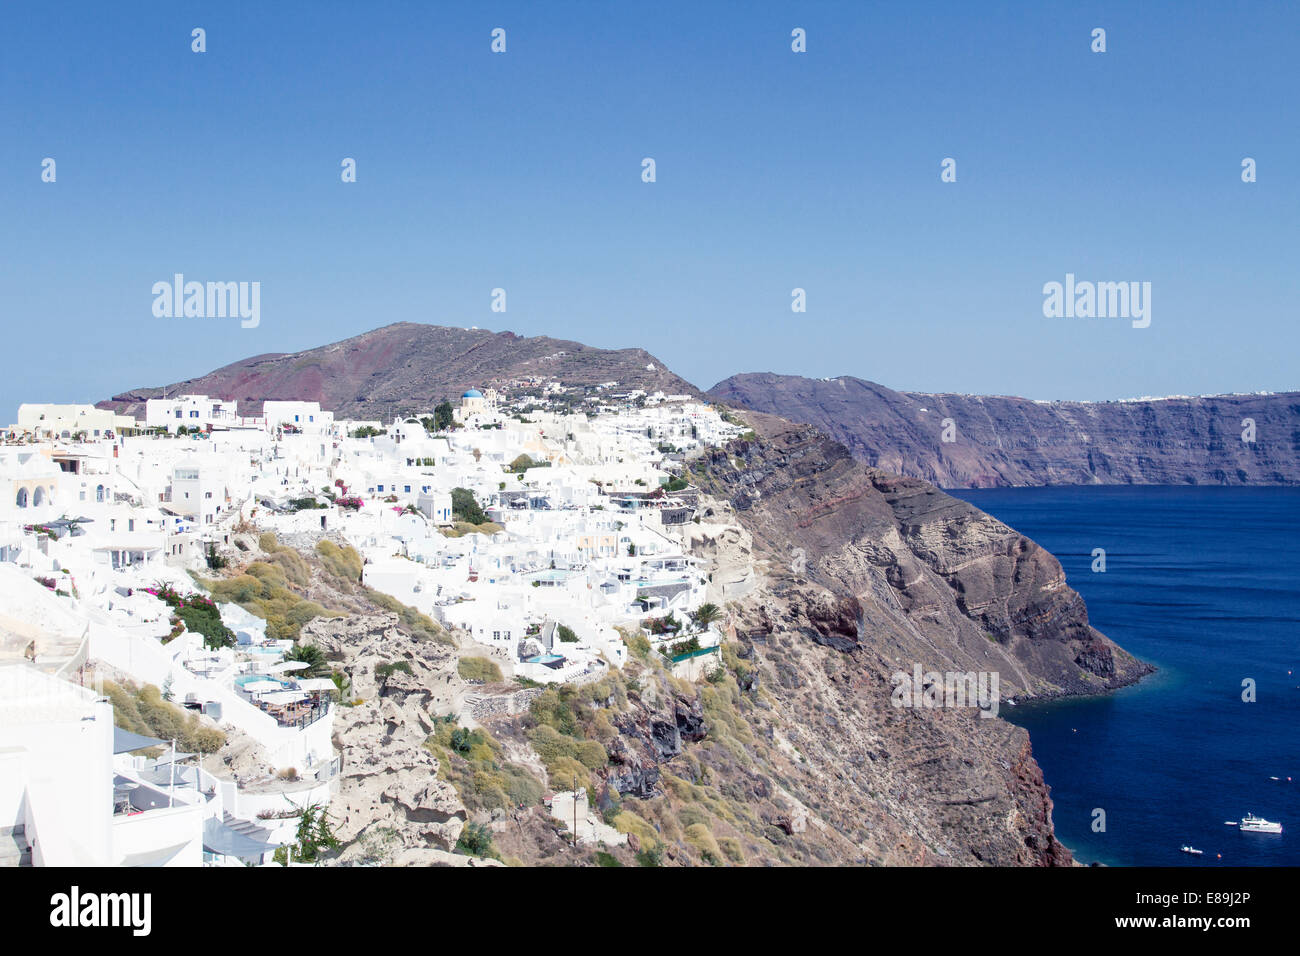 Oia village on the island of Santorini Stock Photo